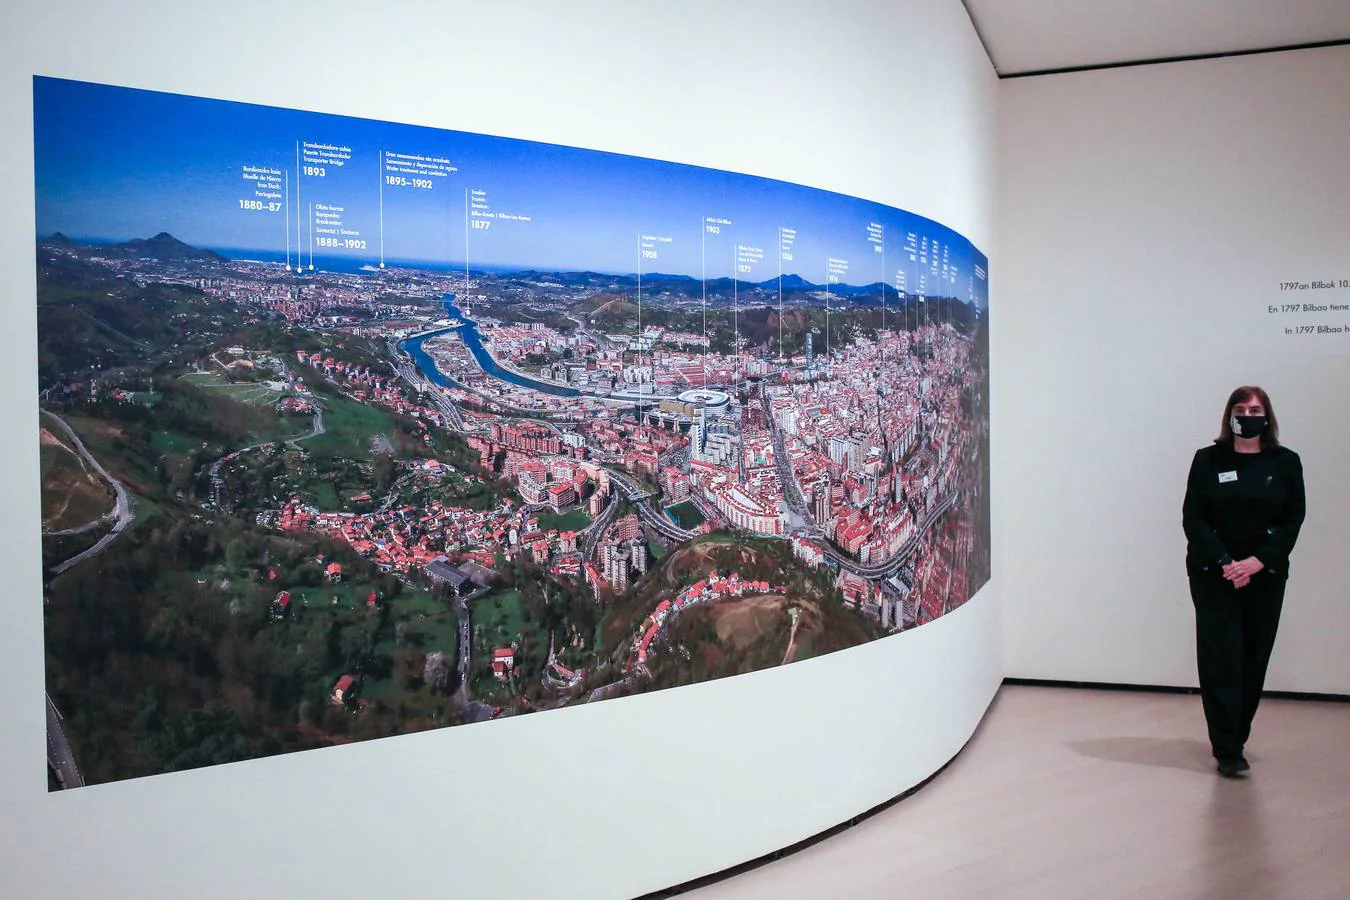 El museo Guggemheim presenta Bilbao y Pintura